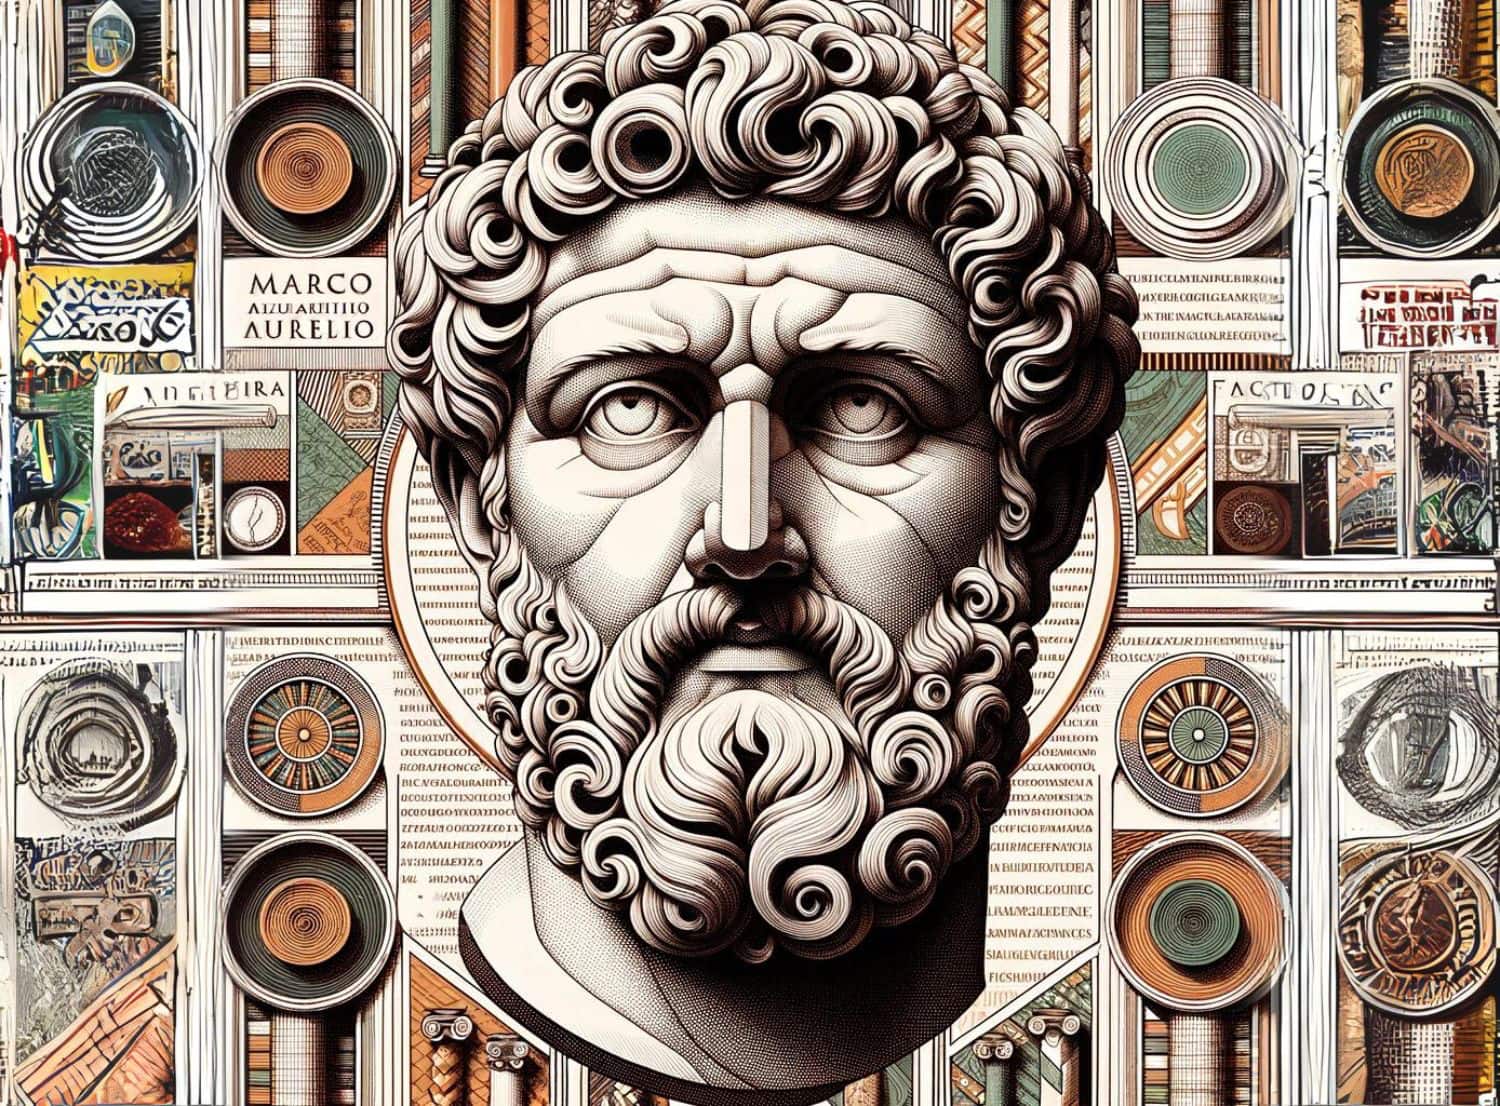 Ritratto di Marco Aurelio circondato da elementi antichi.